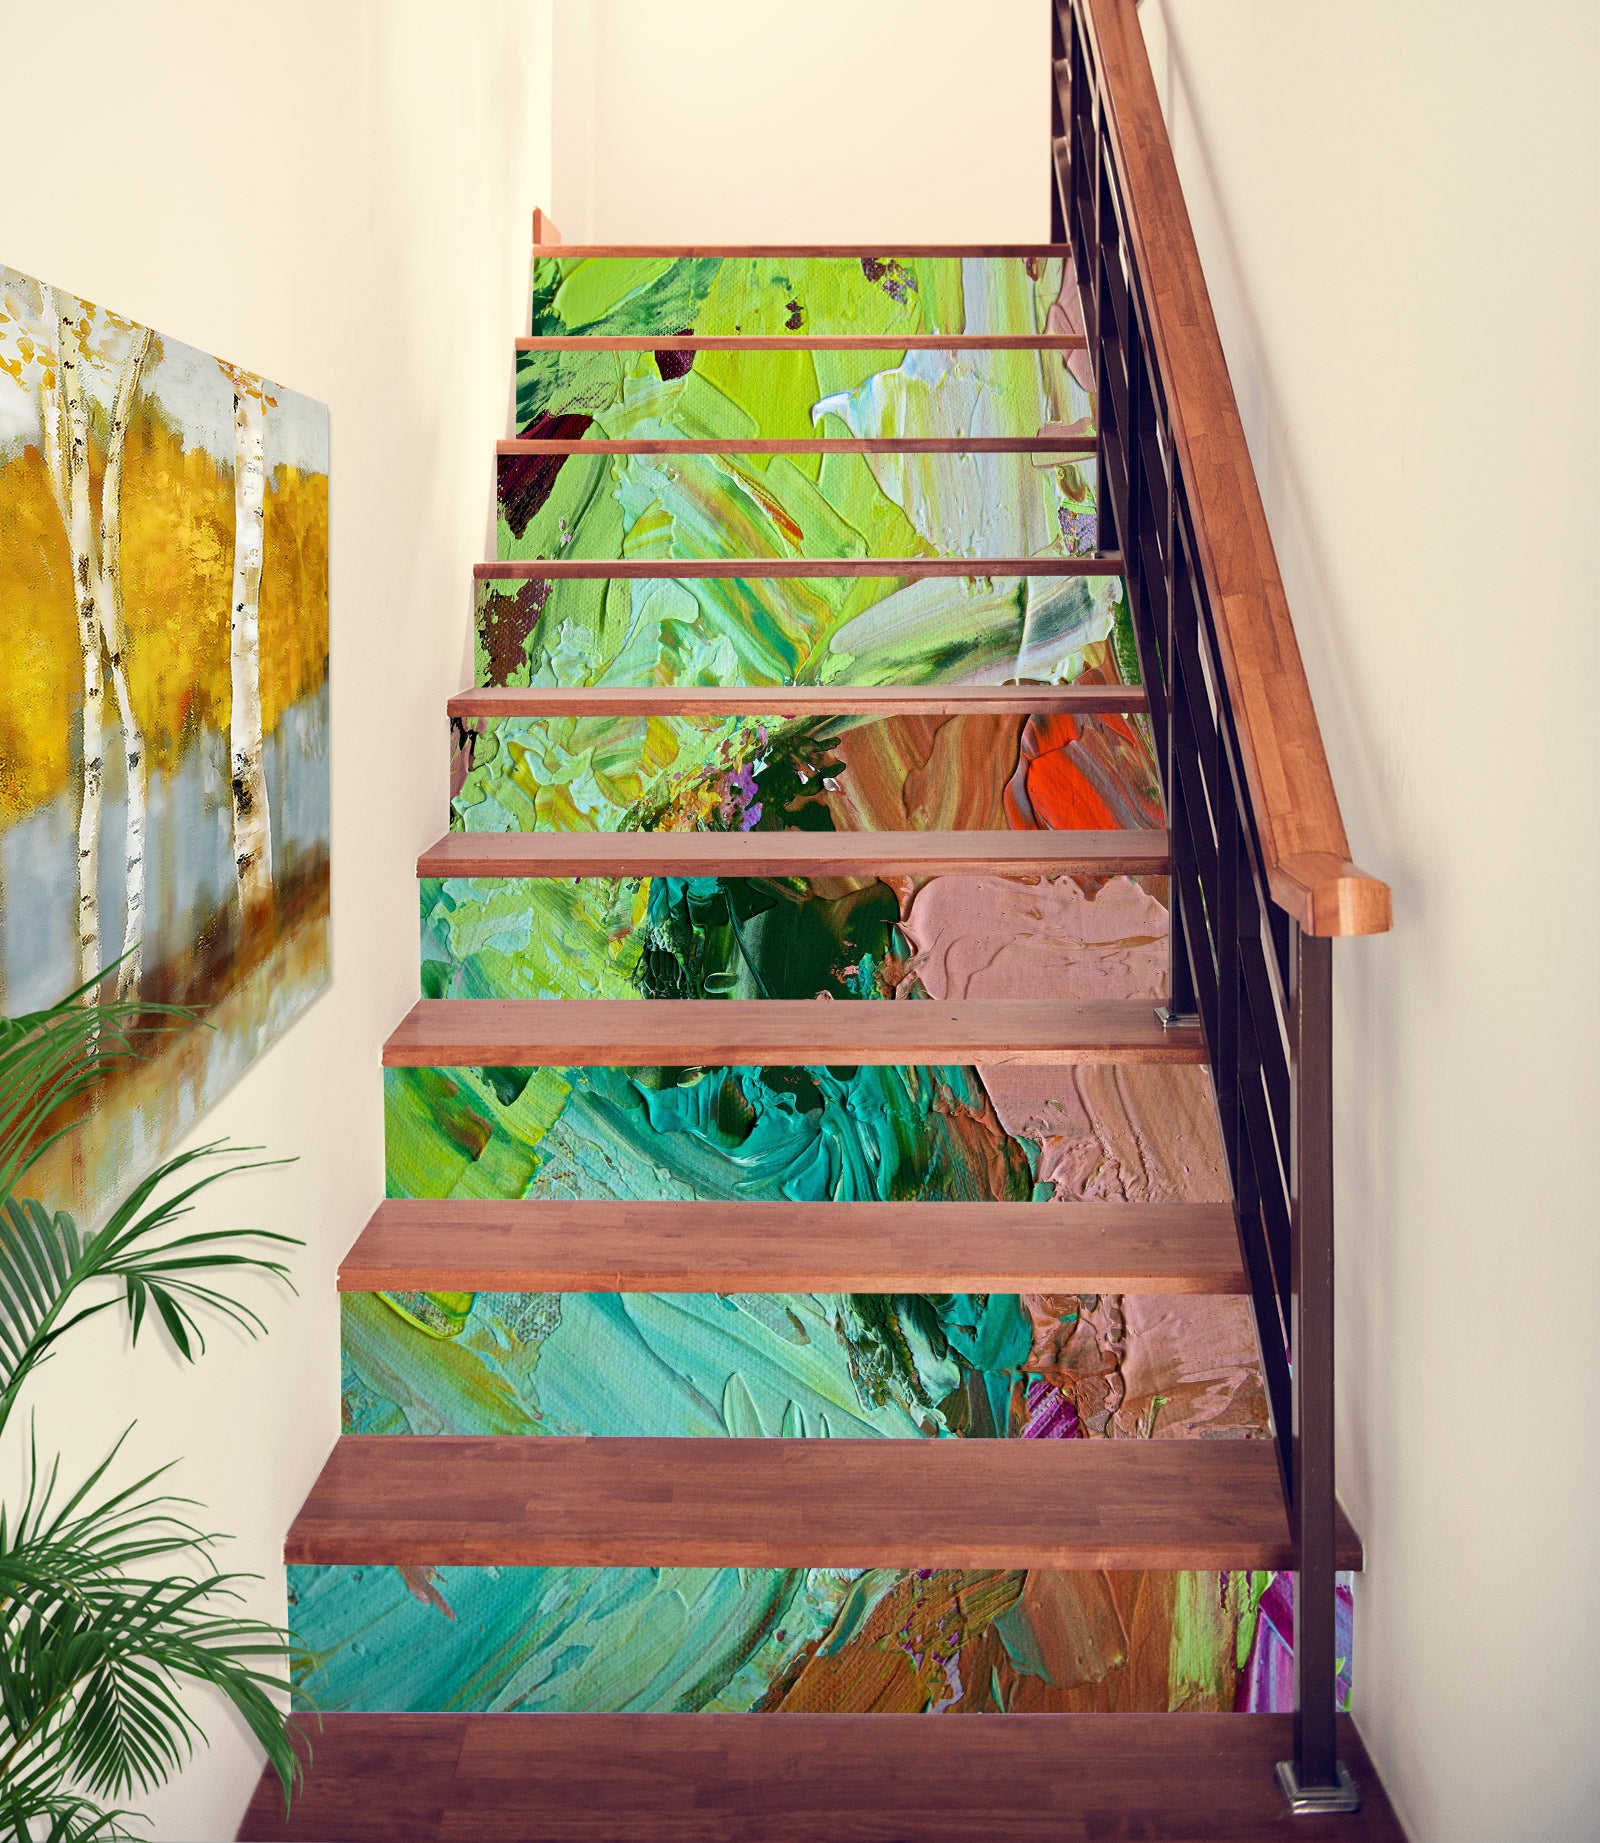 3D Paint Brush Texture 9027 Allan P. Friedlander Stair Risers